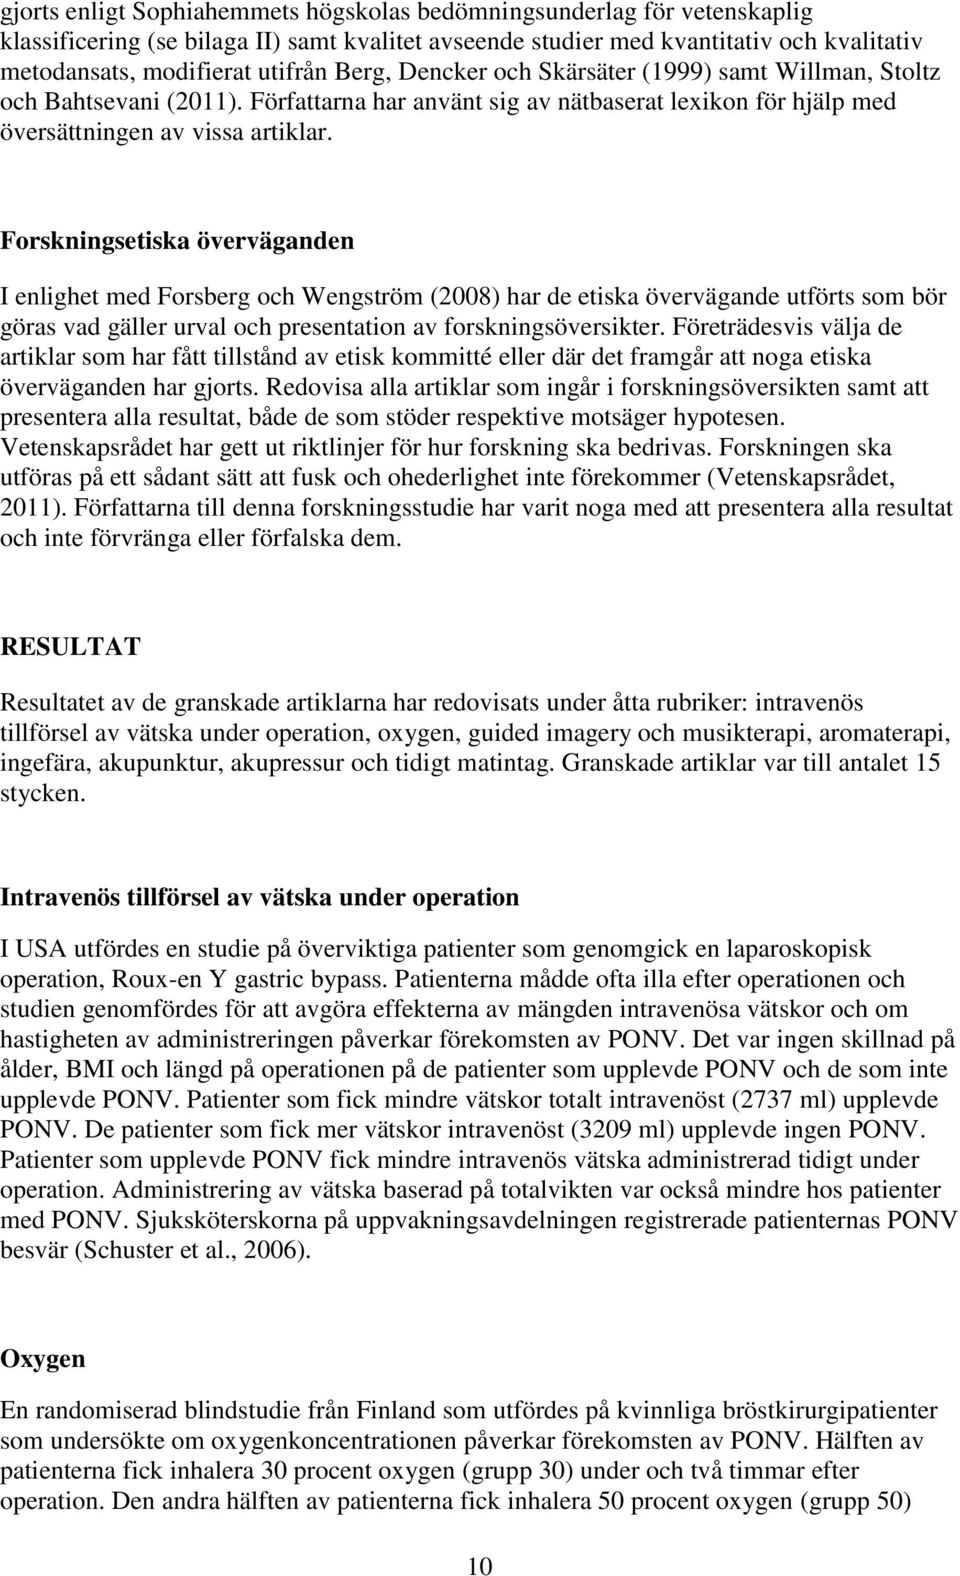 Forskningsetiska överväganden I enlighet med Forsberg och Wengström (2008) har de etiska övervägande utförts som bör göras vad gäller urval och presentation av forskningsöversikter.